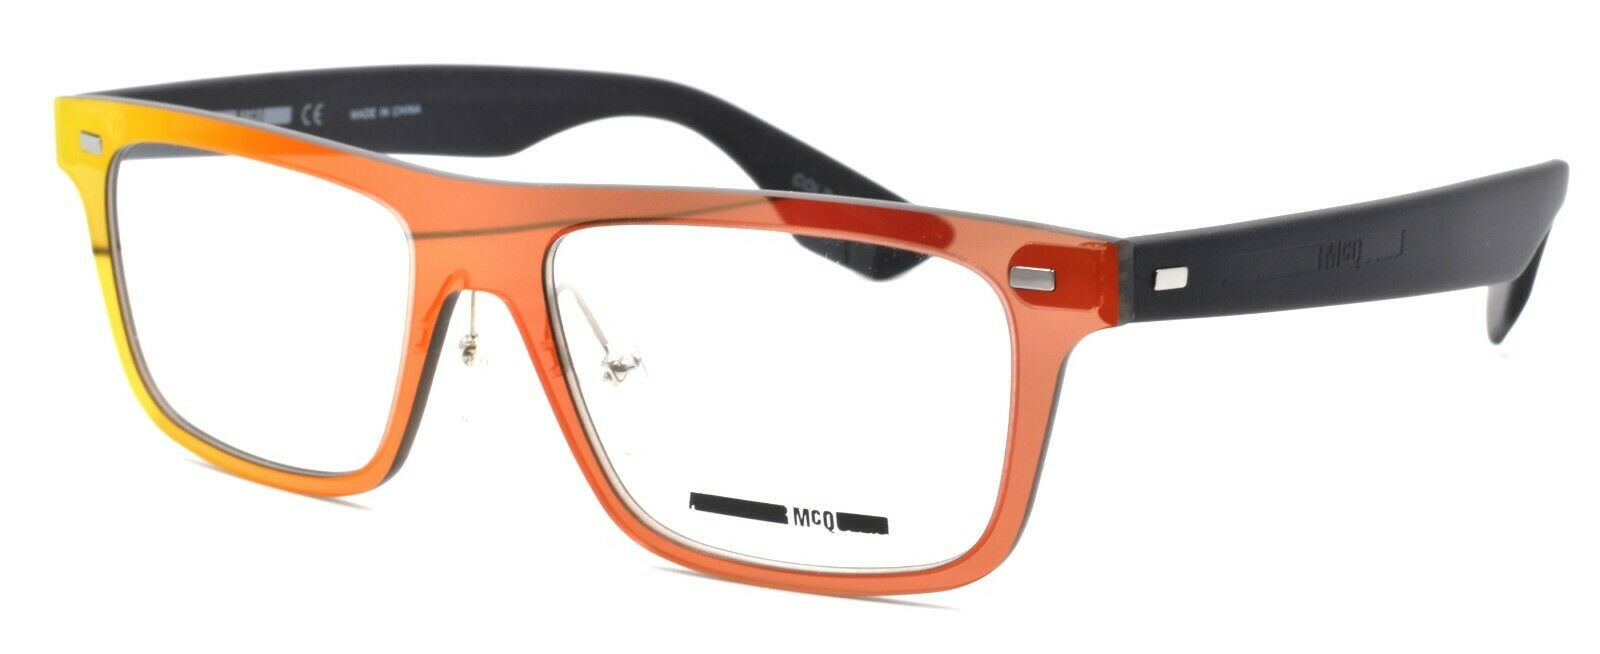 1-McQ Alexander McQueen MQ0025O 003 Unisex Eyeglasses Frames 53-17-145 Red / Black-889652010731-IKSpecs